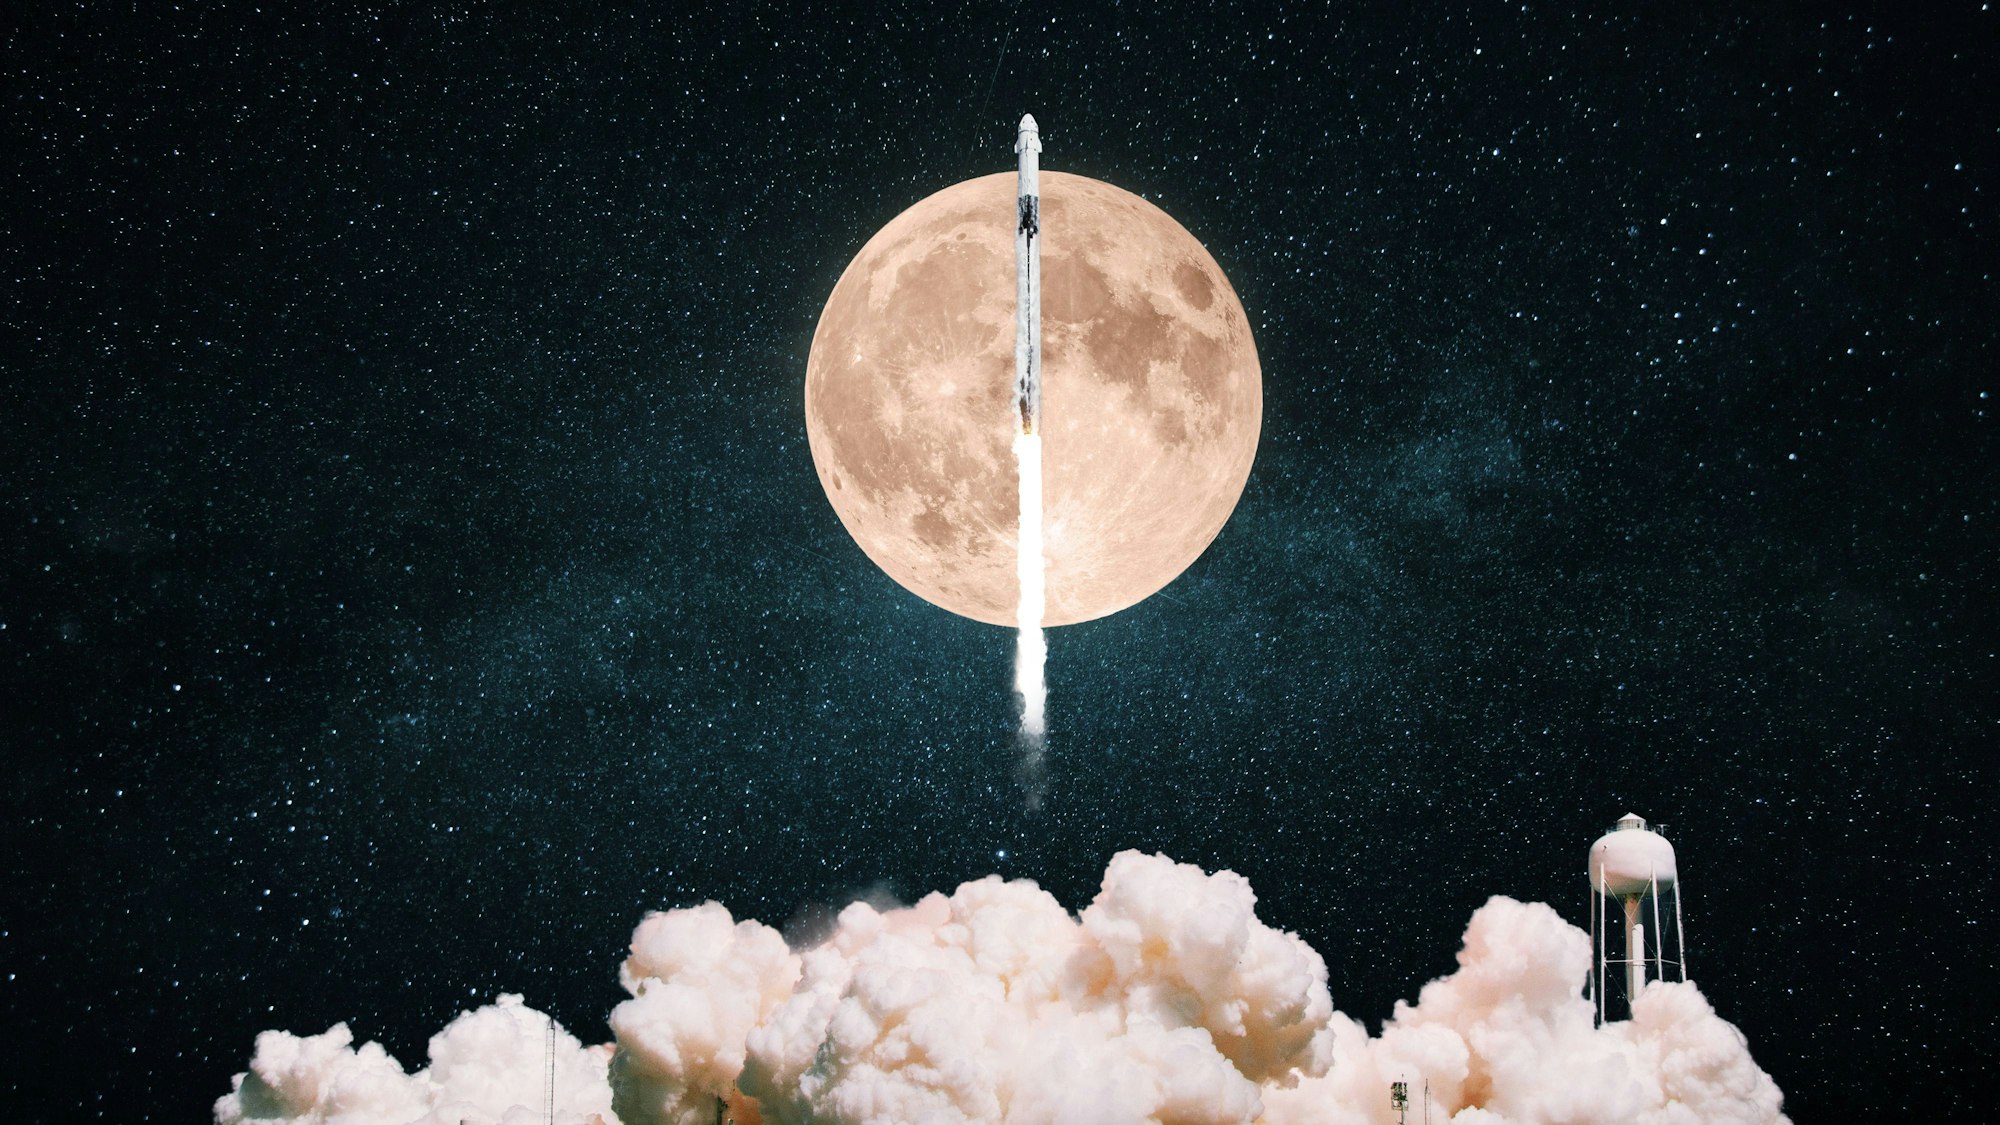 Eine Rakete mit Rauch und Wolken hebt sich mit Vollmond in den Sternenhimmel.